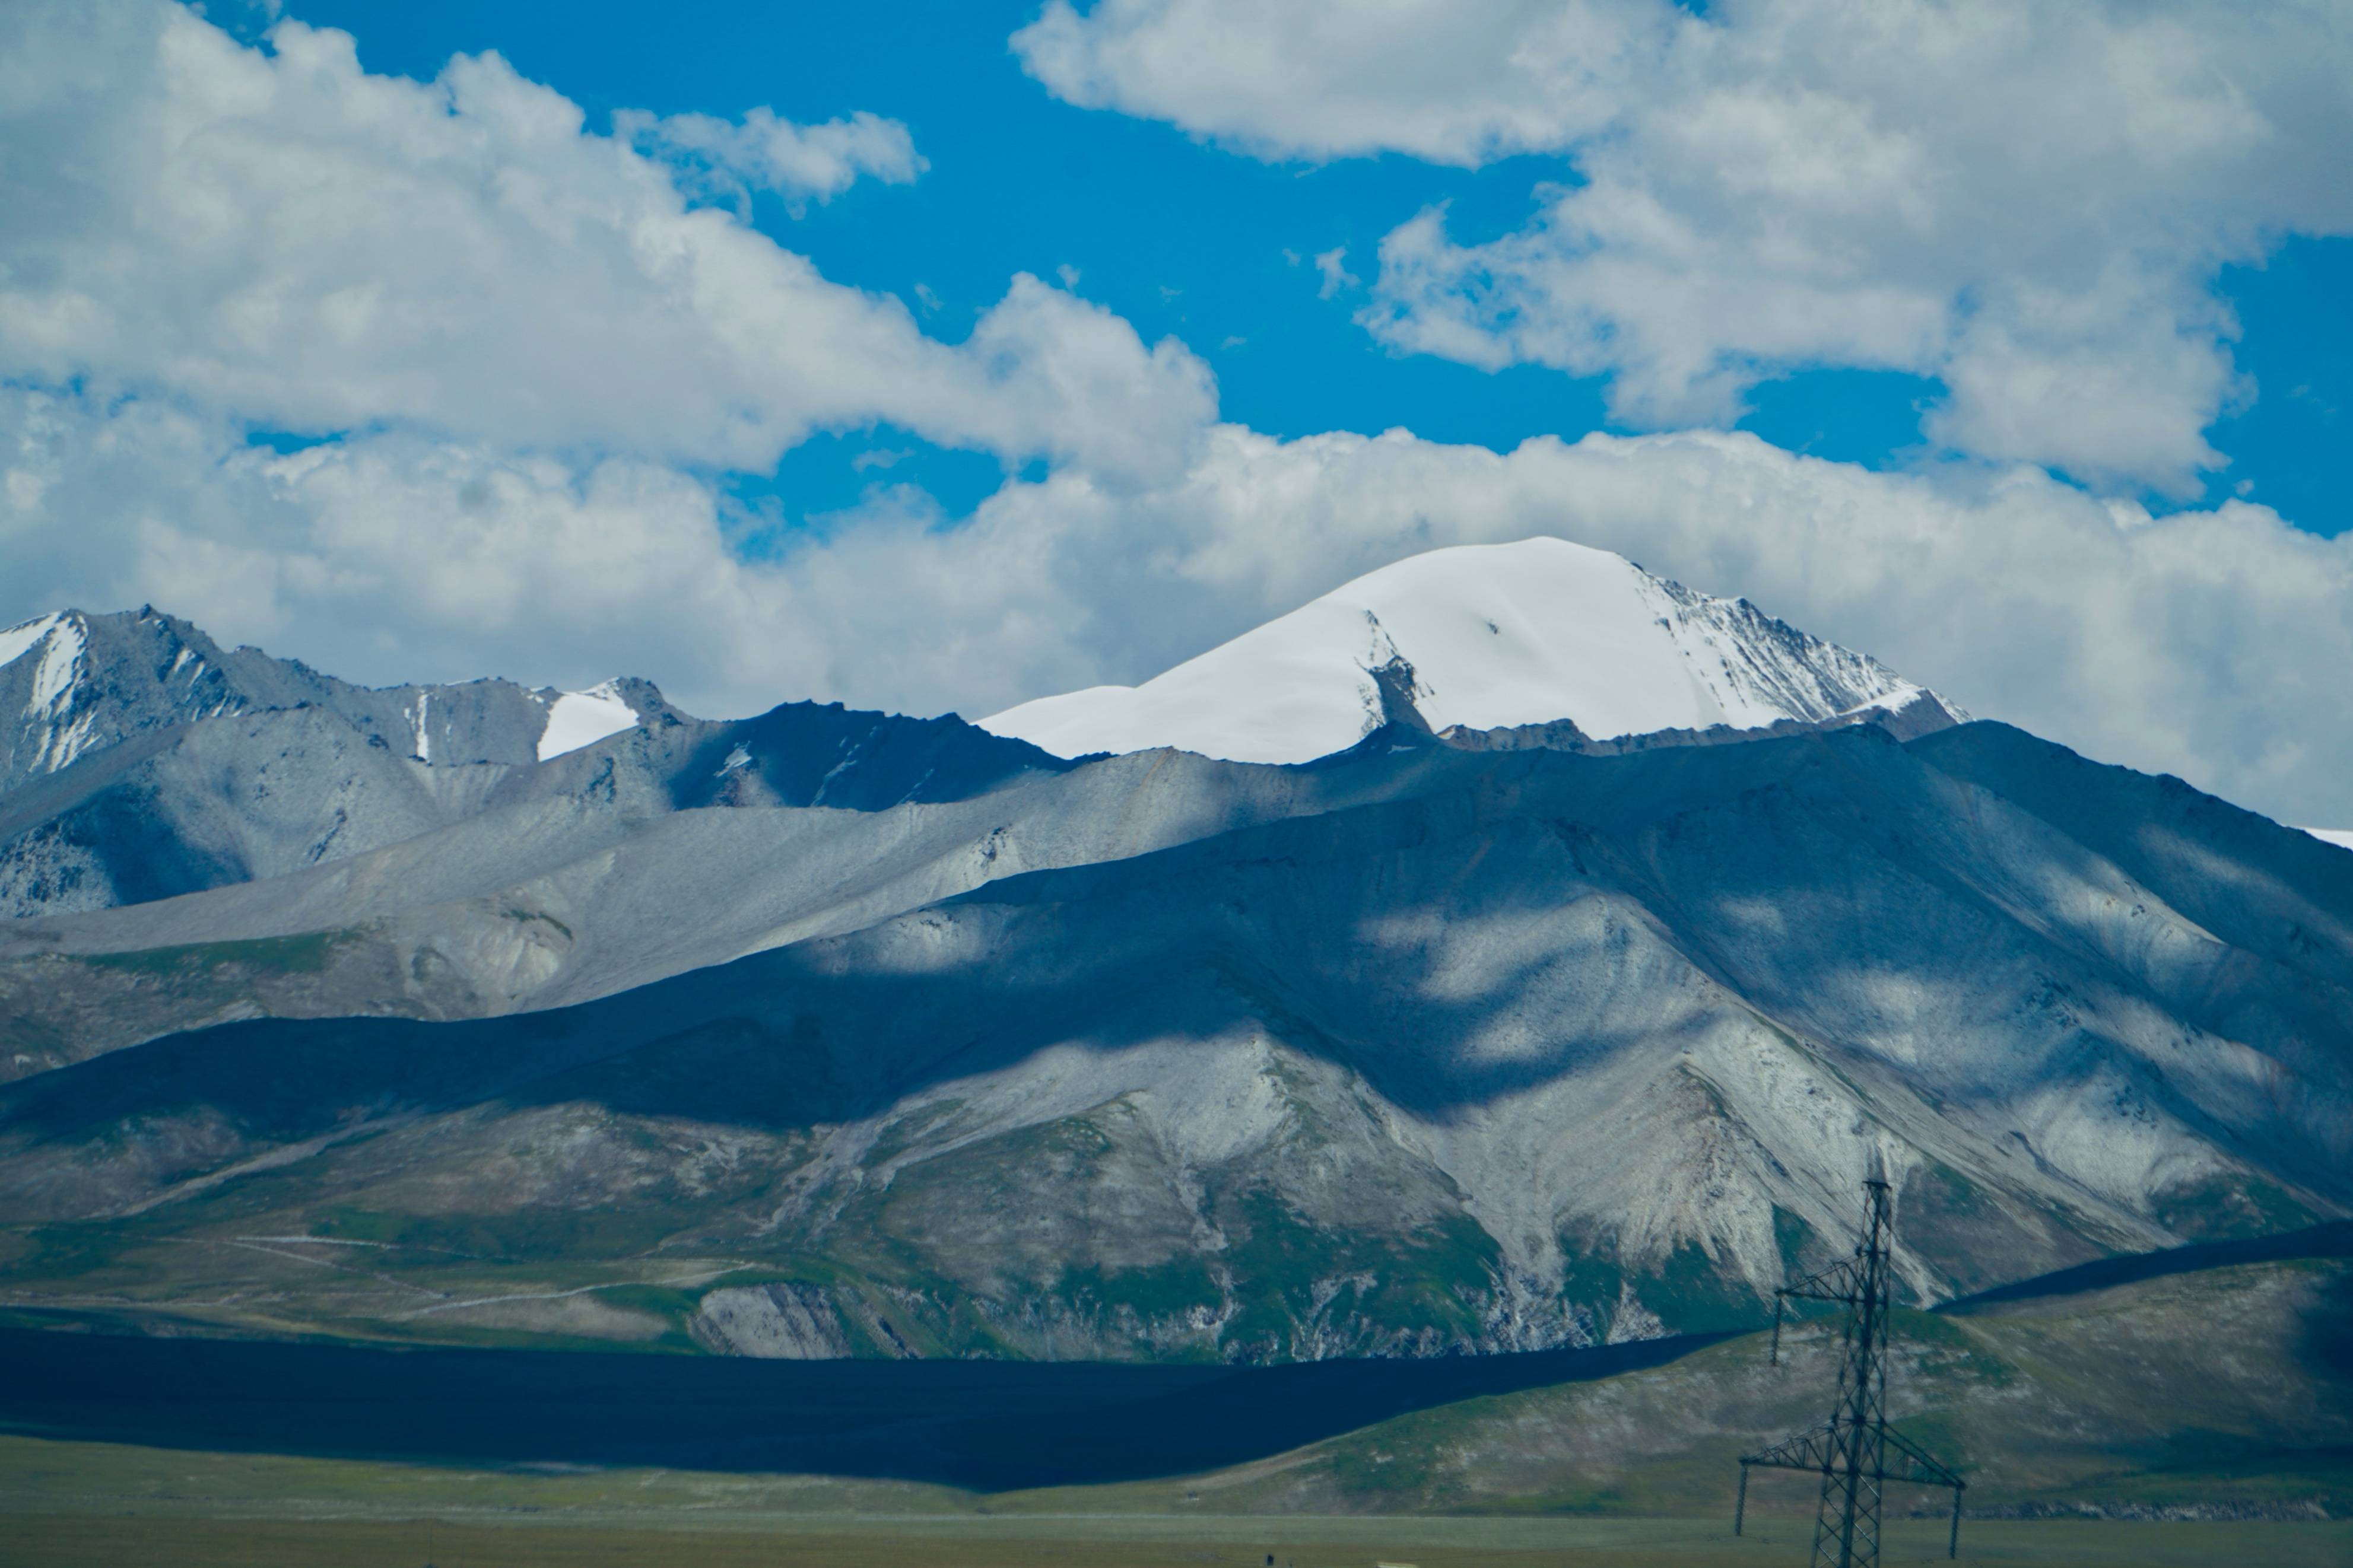 原创万山之祖昆仑山真的有神仙吗6178米玉珠峰近在眼前好美